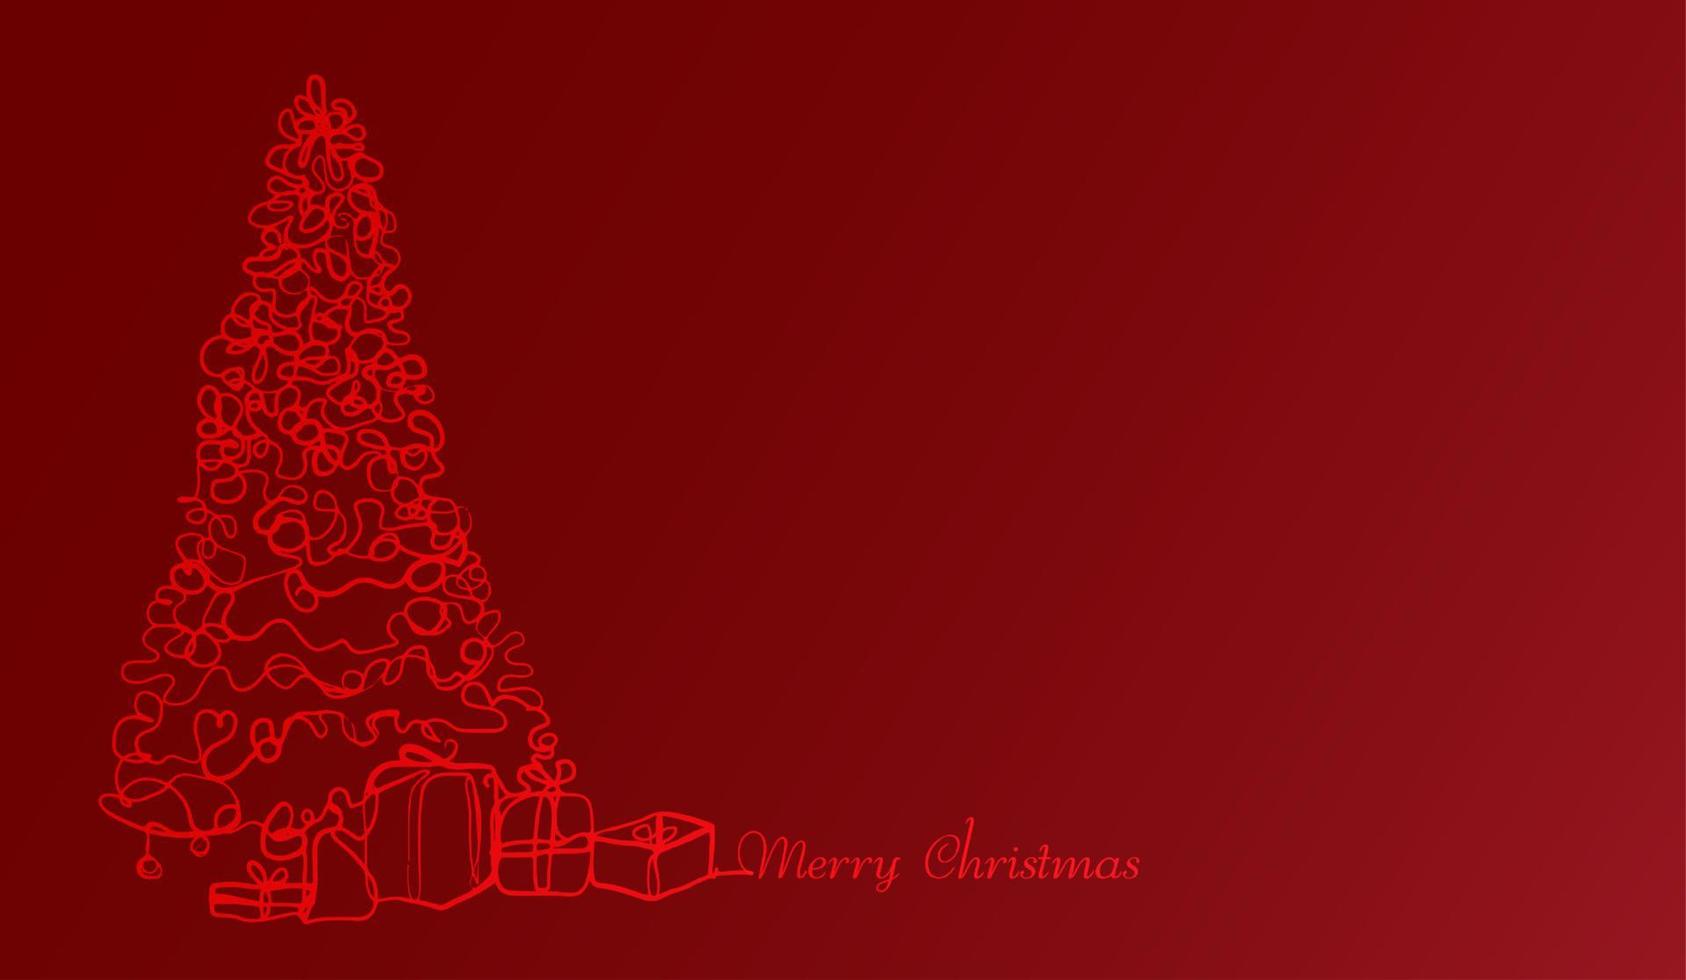 Weihnachtsbaum und Geschenke oder Geschenkbox. durchgehende Linie Frohe Weihnachten Zeichnung auf rotem Grund. Vektordesign vektor